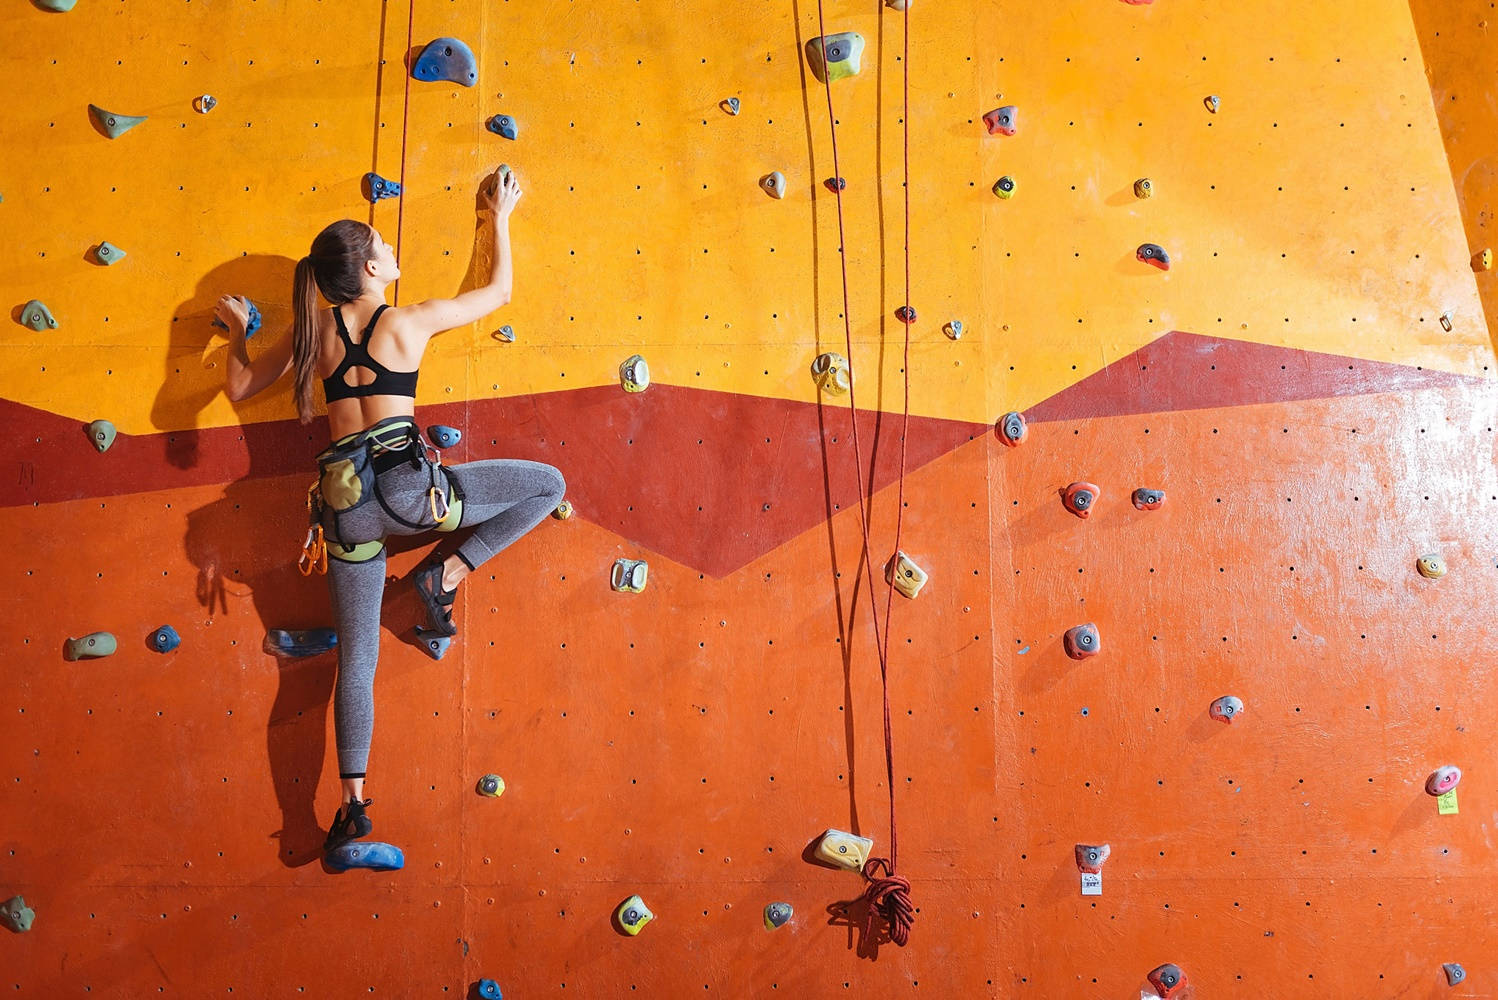 Orangerindoor-klettersportort Wallpaper